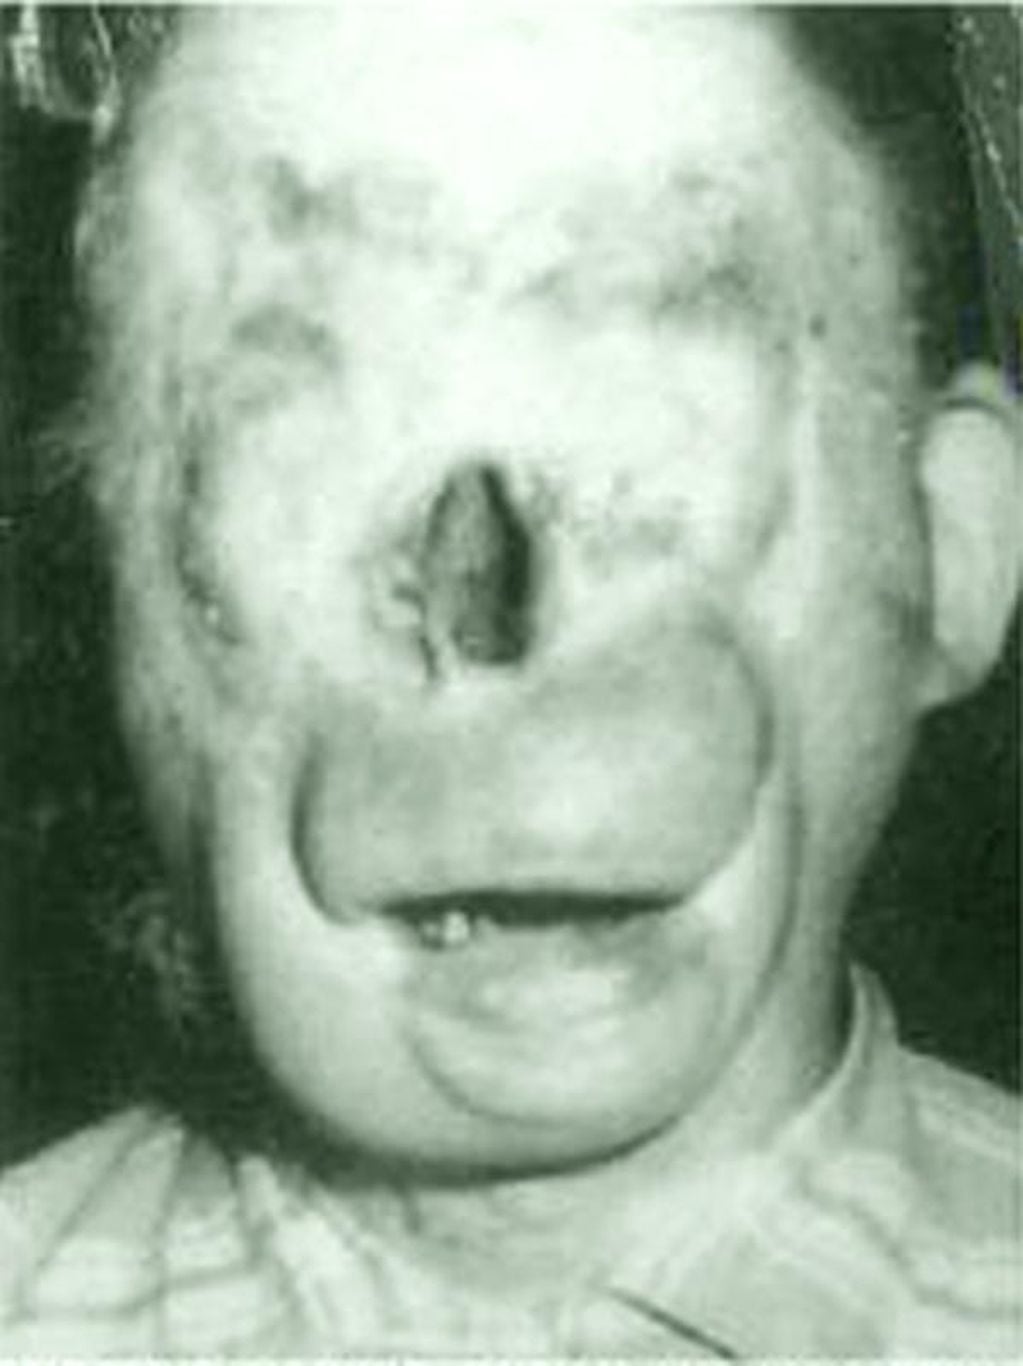 Un sujeto sufrió la desfiguración de su rostro y eso dio pie para el surgimiento de una tenebrosa leyenda.